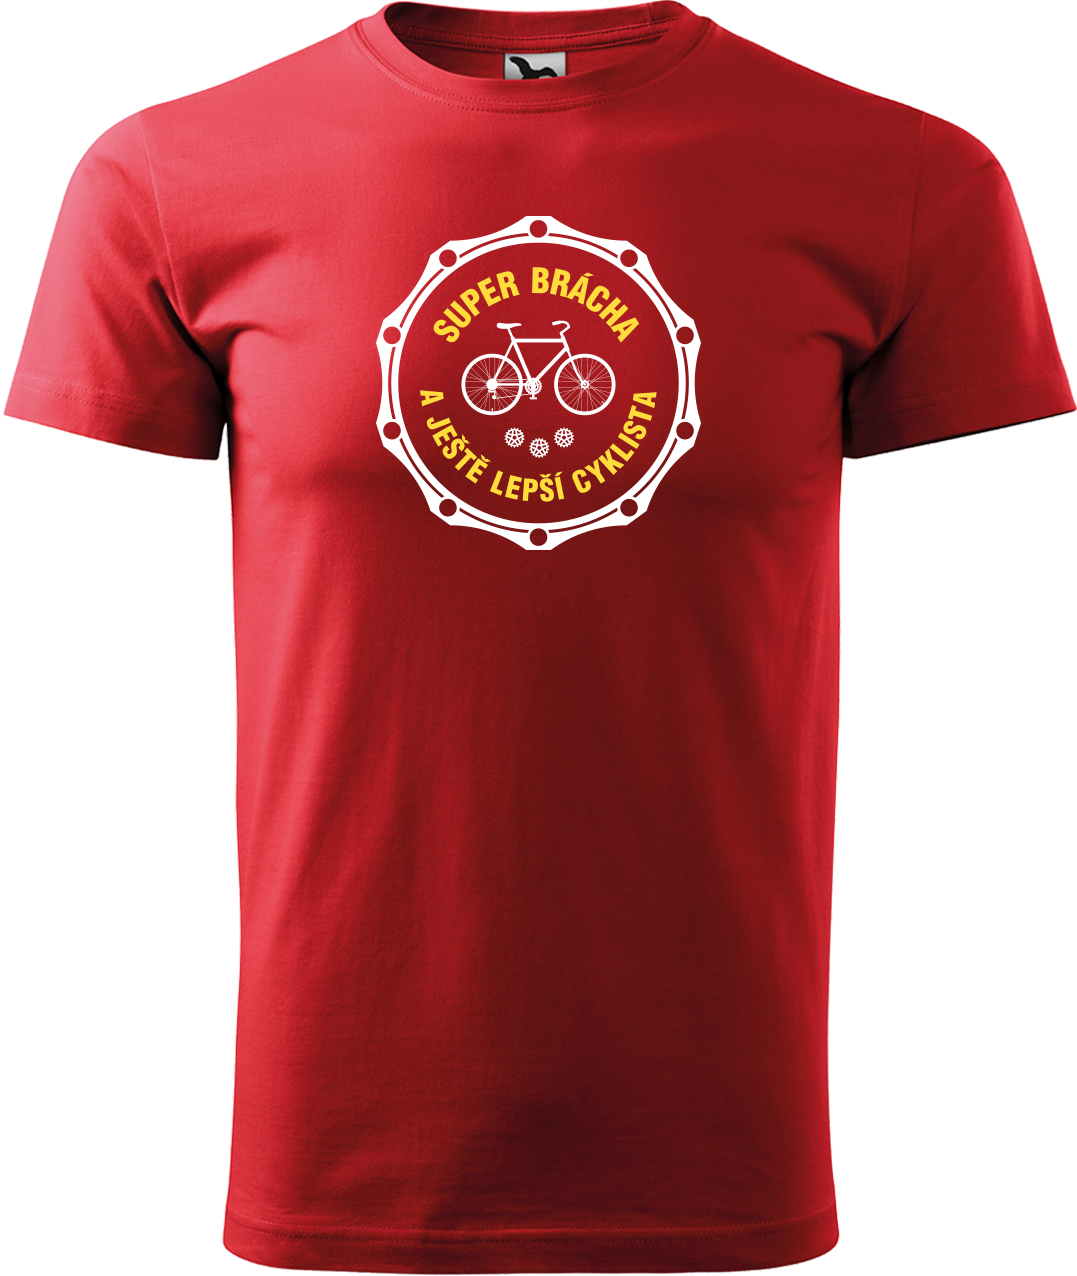 Pánské tričko pro cyklistu - Super brácha a ještě lepší cyklista Velikost: S, Barva: Červená (07)